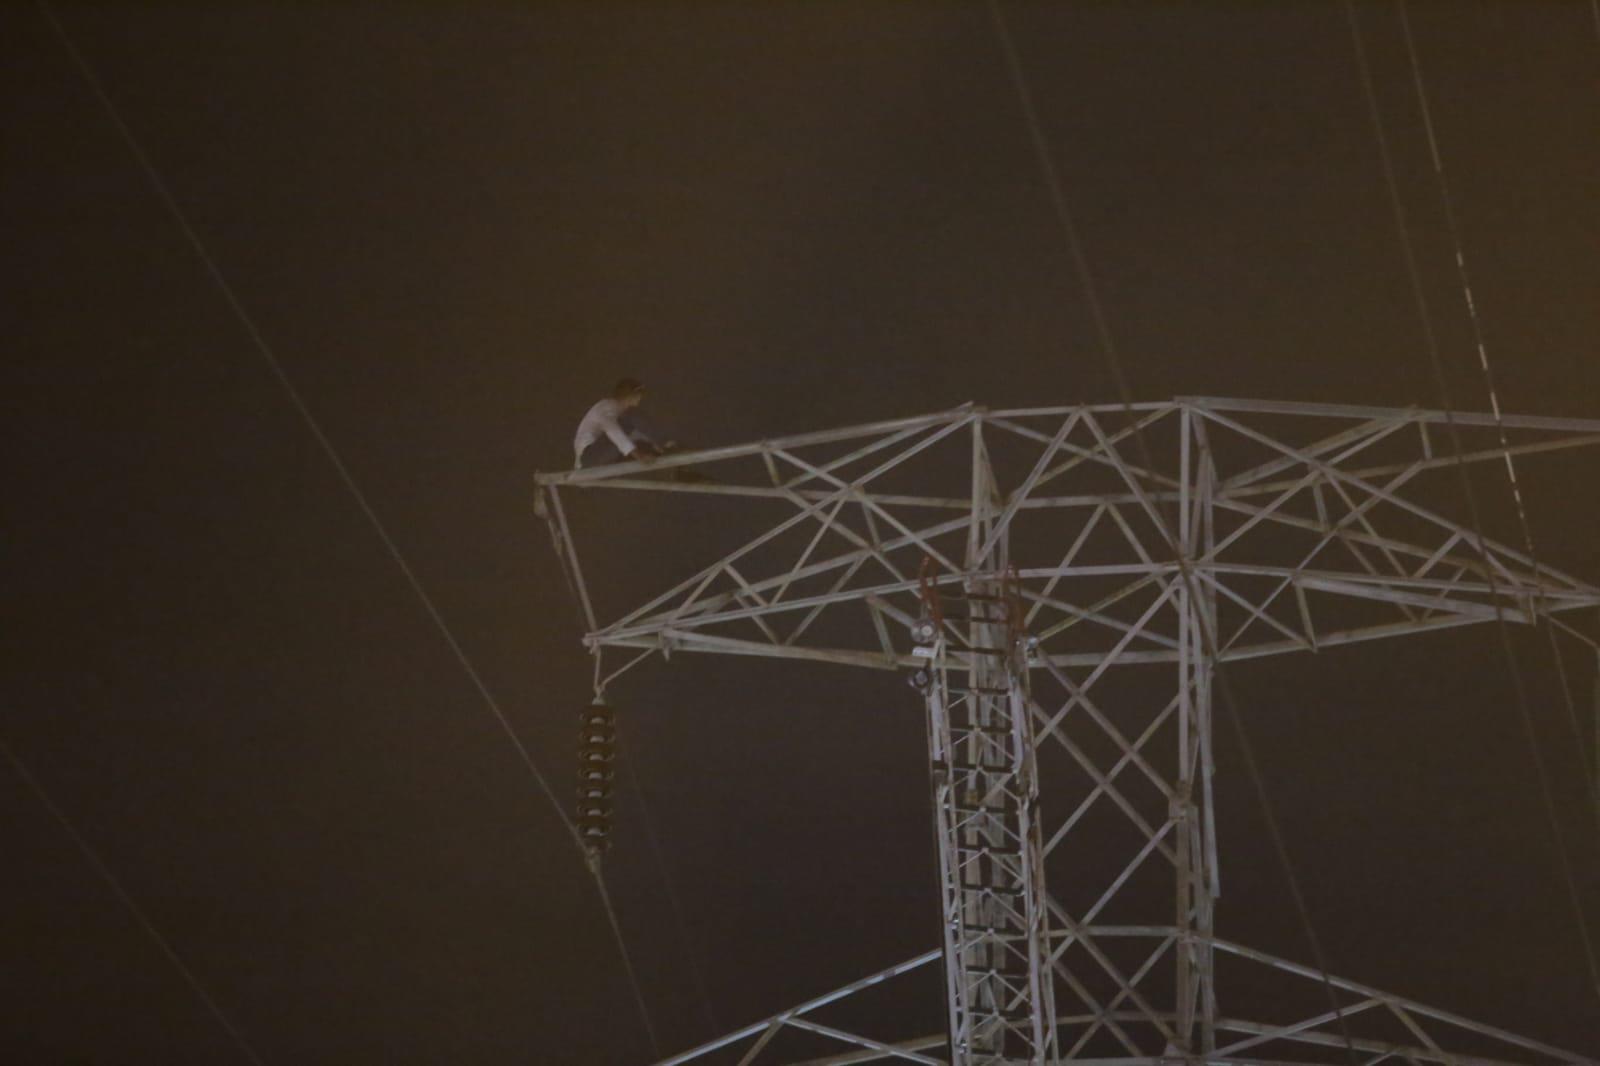 $!Hombre se sube otra vez a torre de 30 metros en Mazatlán y pone en alerta a autoridades